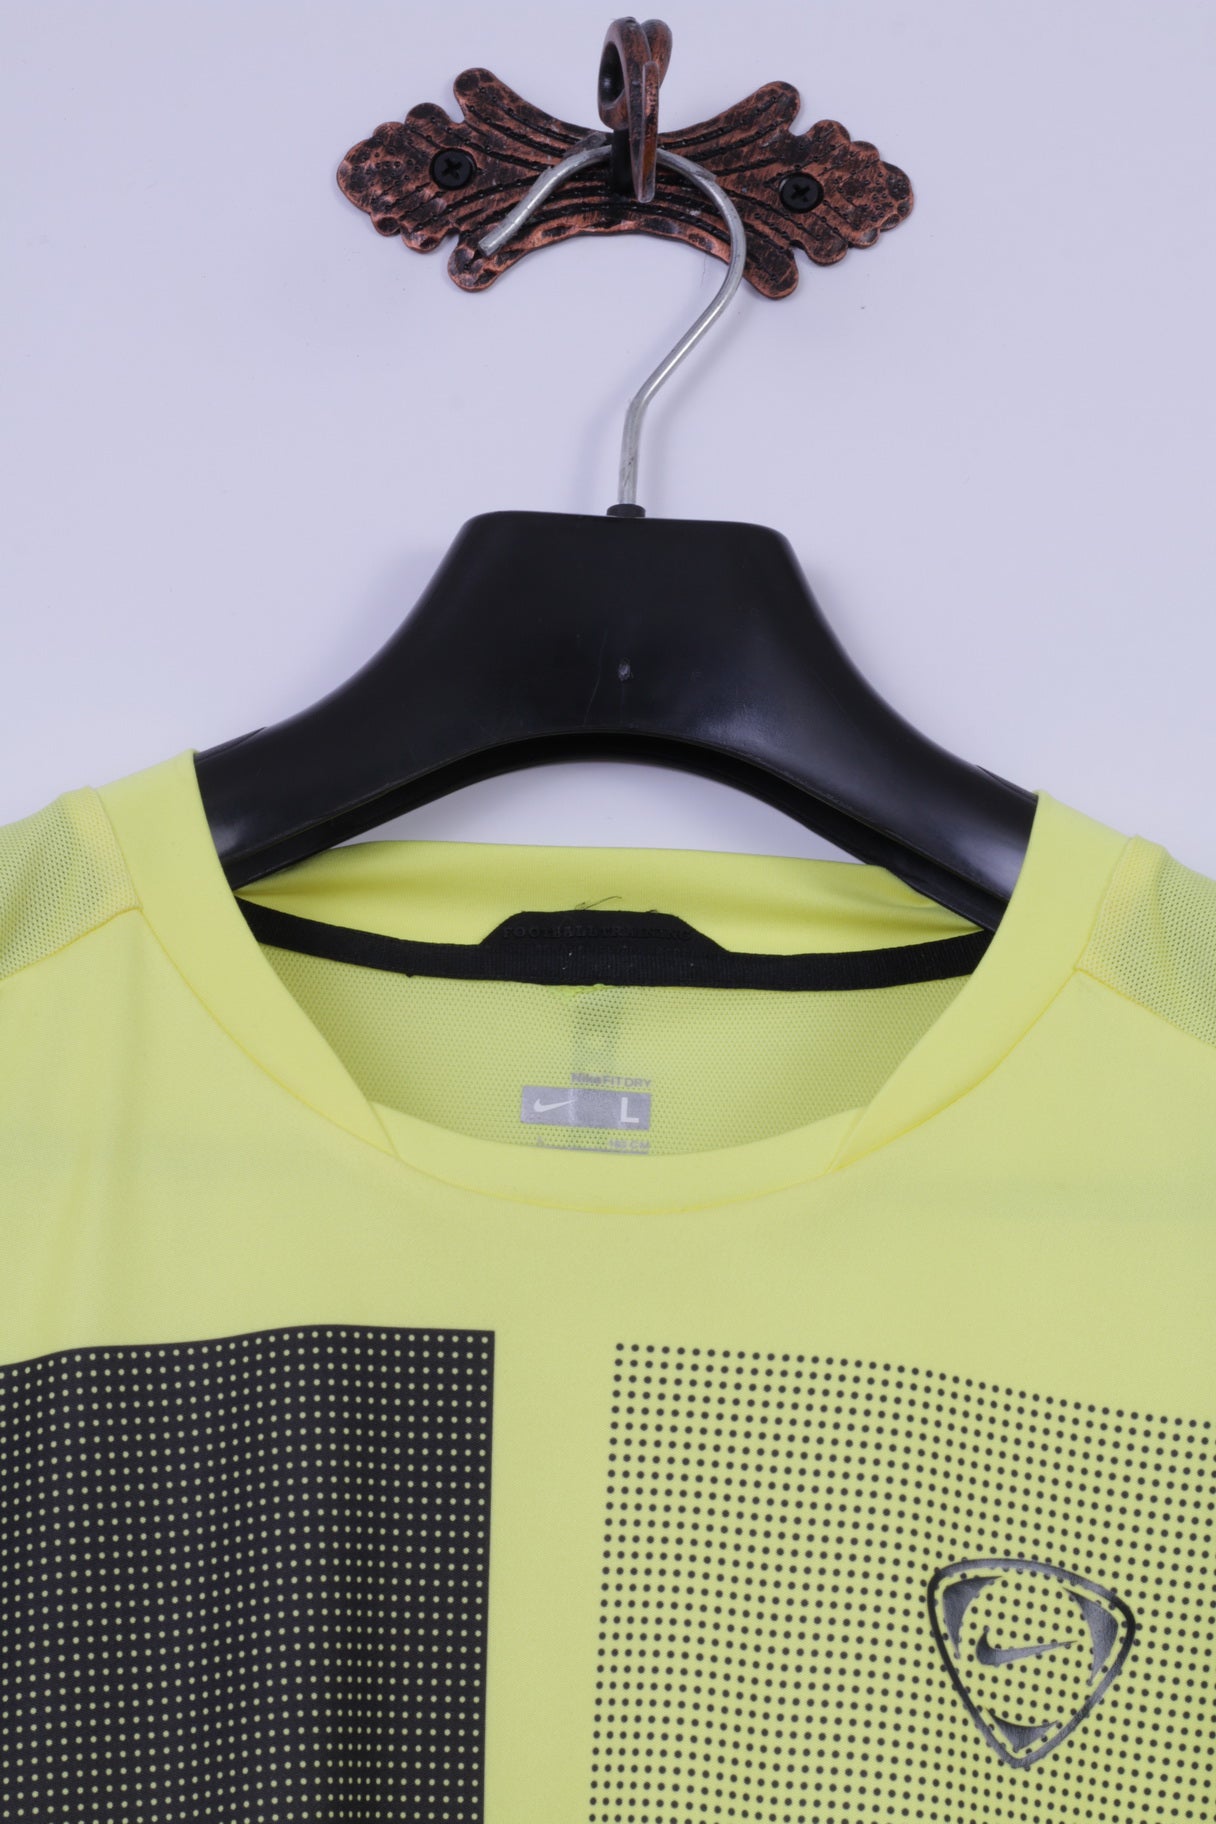 Nike Maglia a L da Uomo Giallo Neon Calcio Allenamento Dri Fit Jersey Abbigliamento Sportivo Top